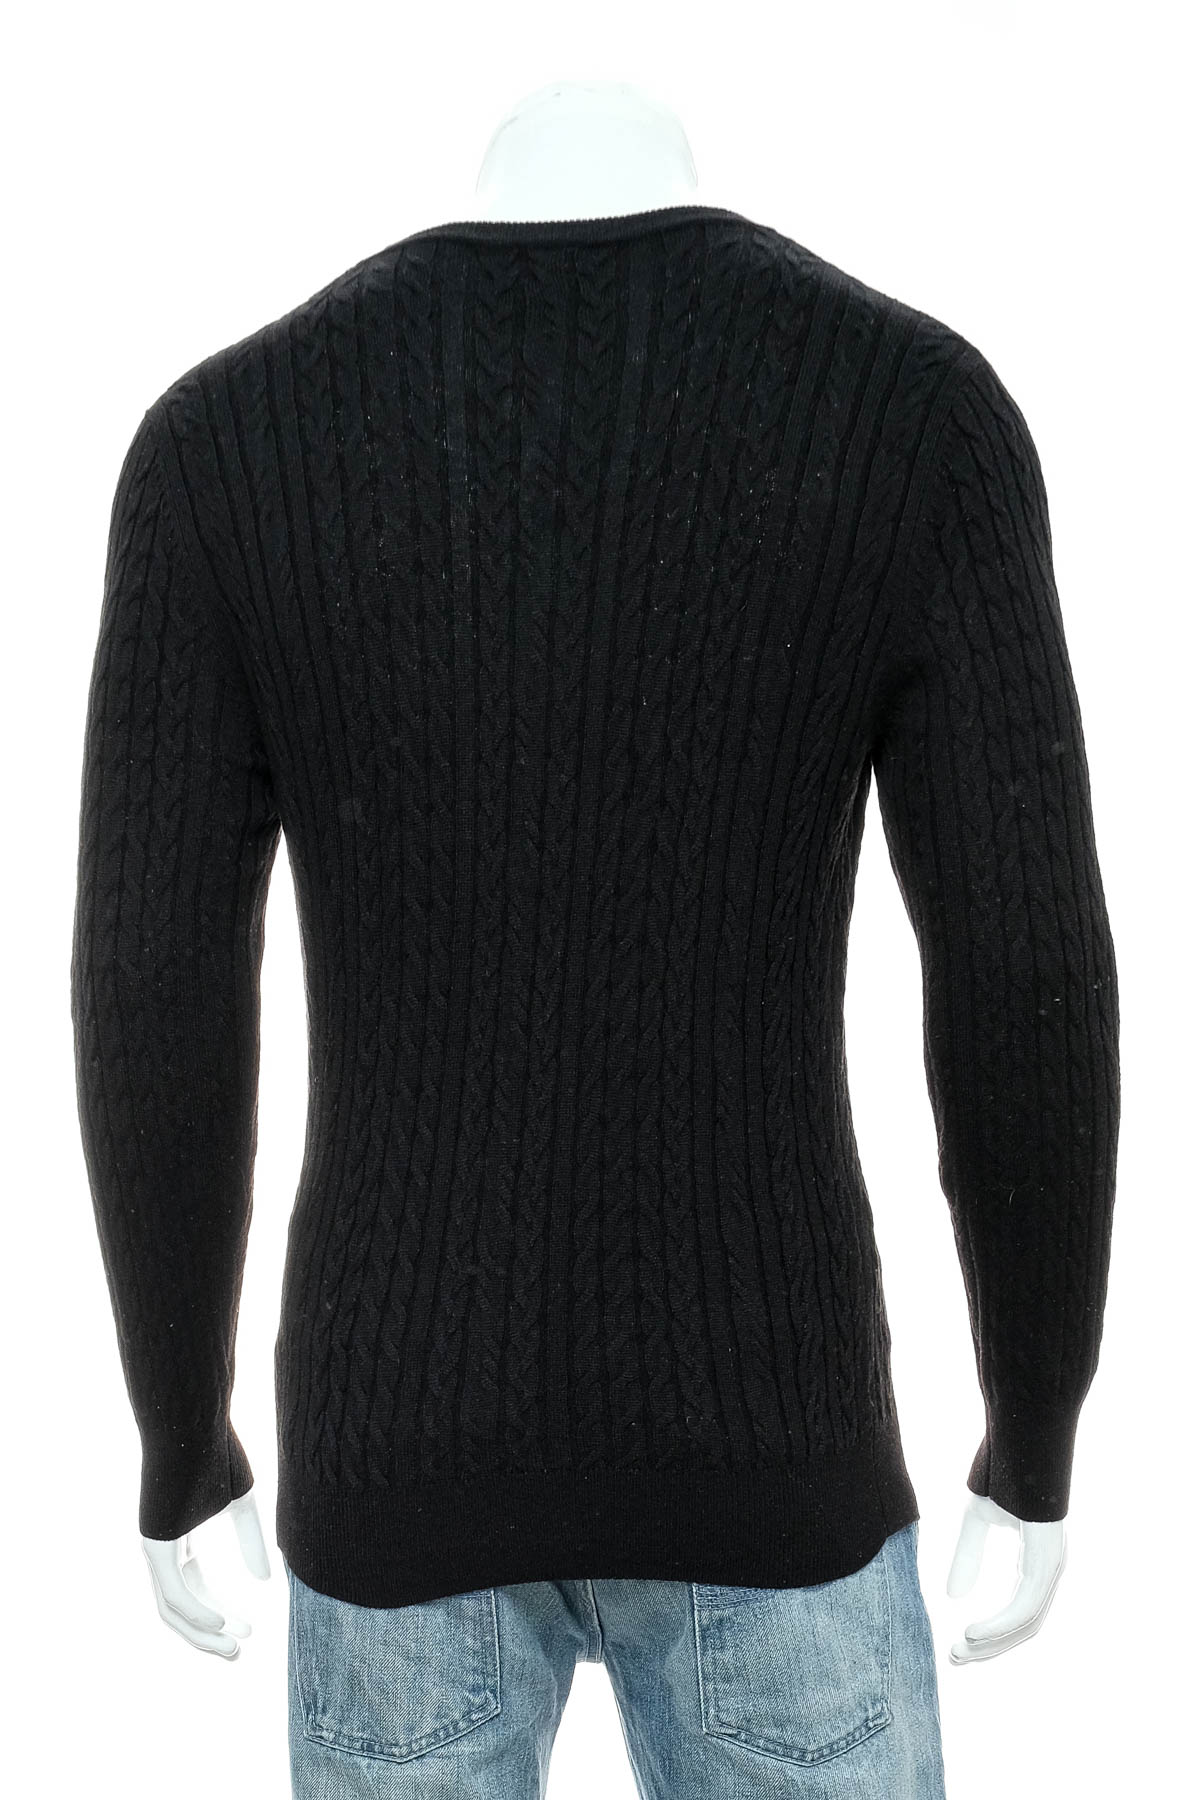 Men's sweater - H&M - 1